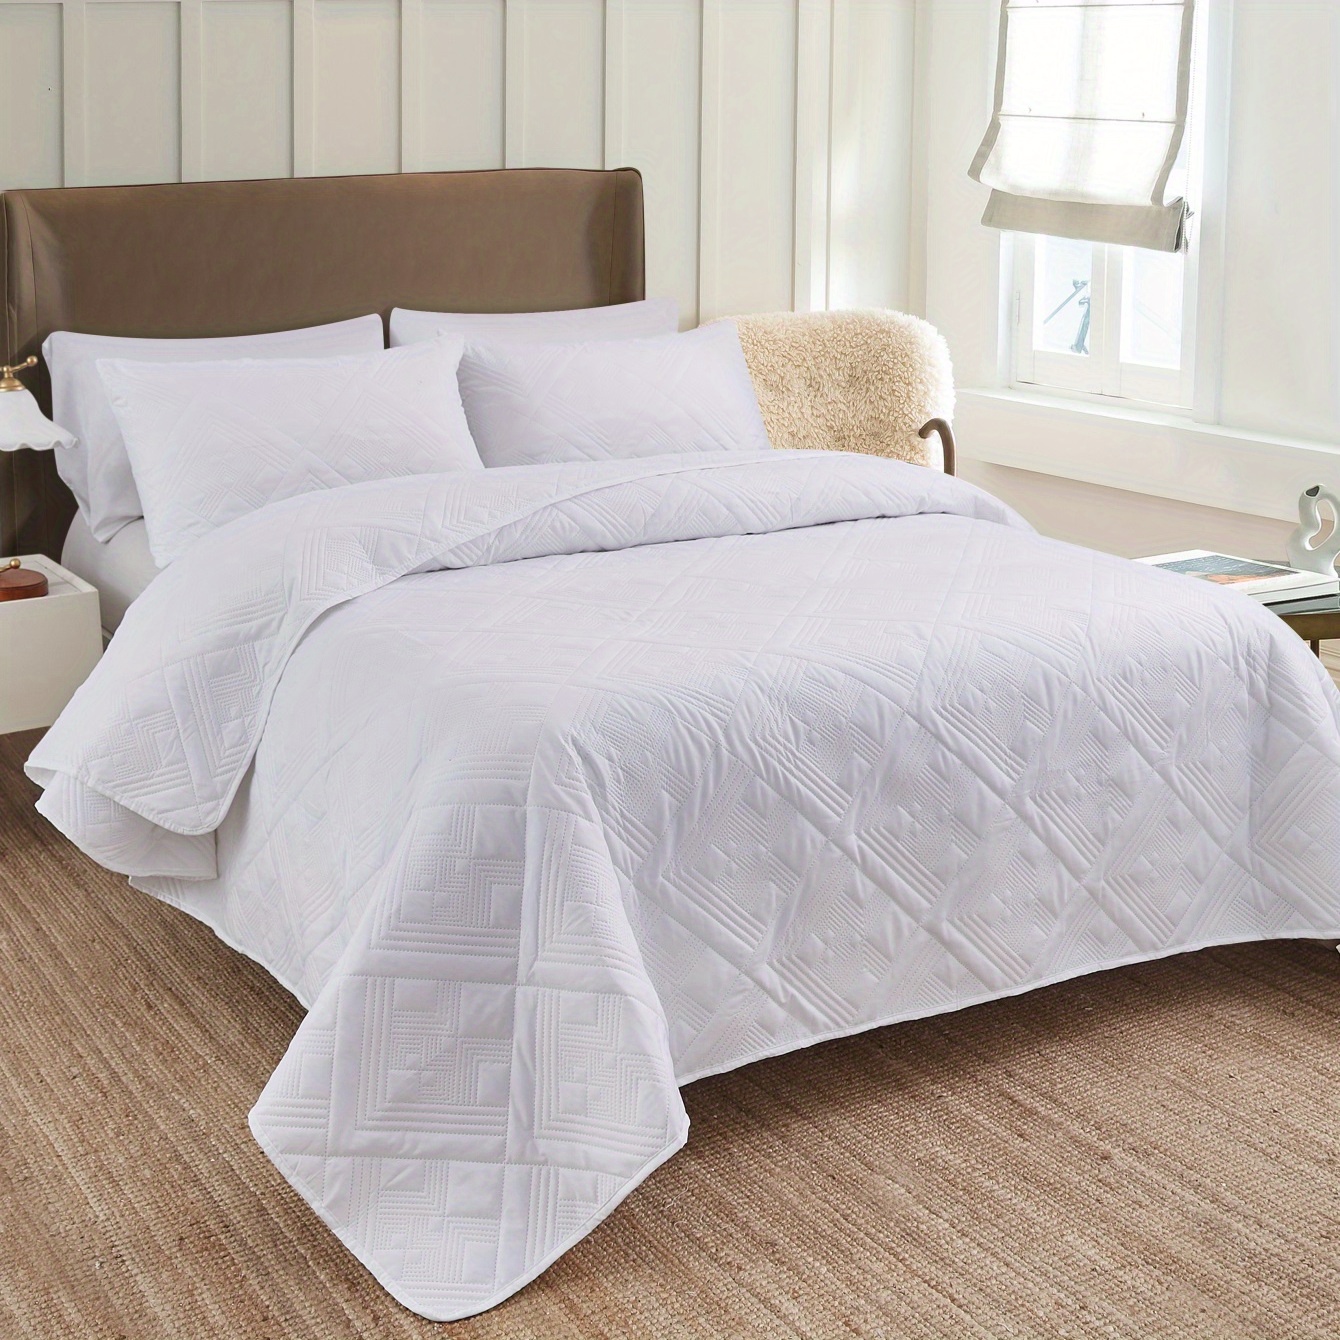 Fancy Collection Juego de cobertor de cama de lujo, de 3 piezas: cobertor  bordado y fundas para almohadas, color rojo liso, tamaño grande.